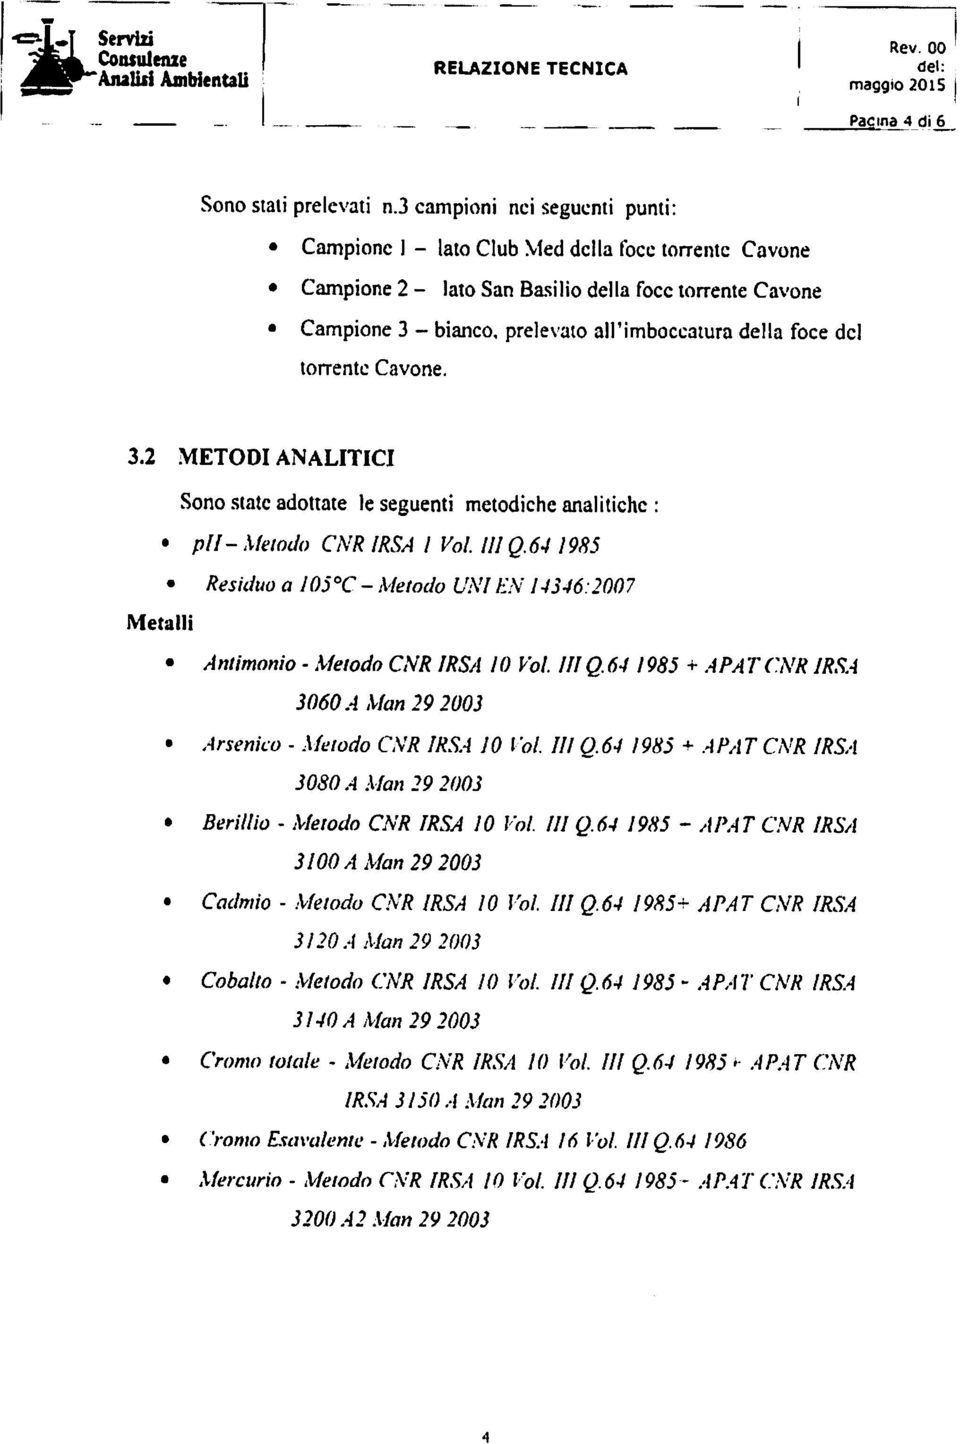 del torrente Cavone. 3.2 METODI ANALITICI Sonostateadottate le seguenti metodiche analitiche : pfl- Metodo CNR IRSA I Voi. Ili Q.